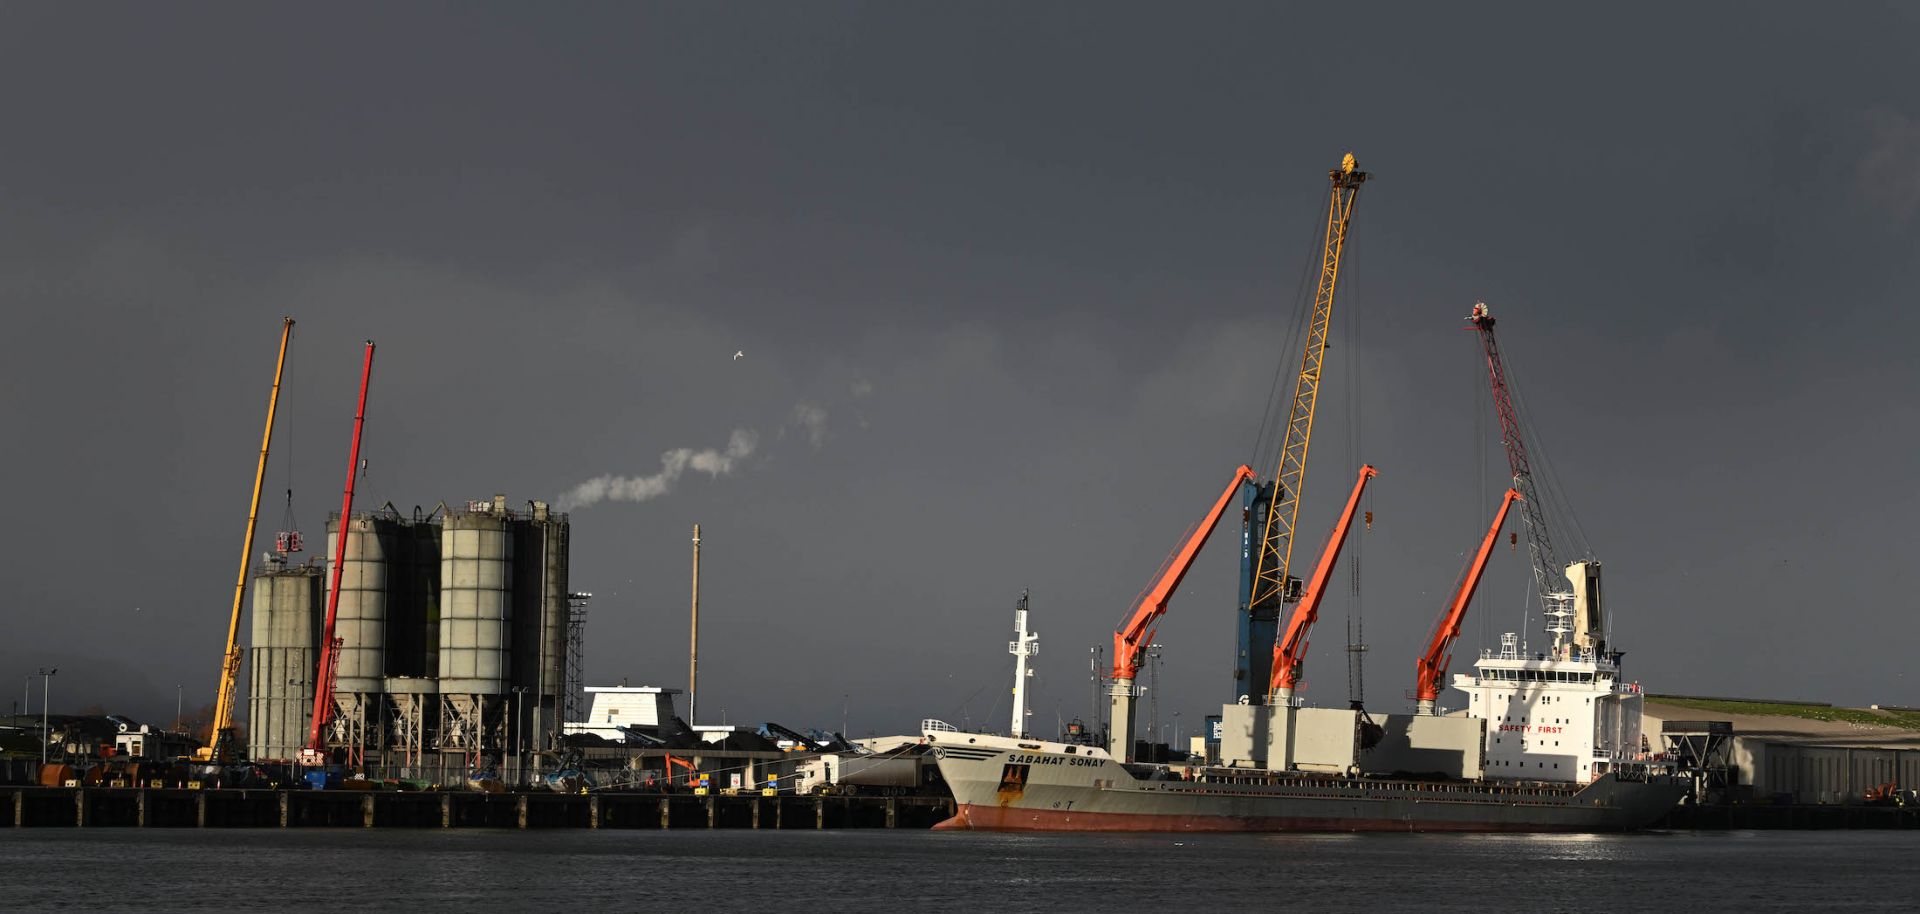 Belfast Harbour on Jan. 17, 2023, in Northern Ireland.